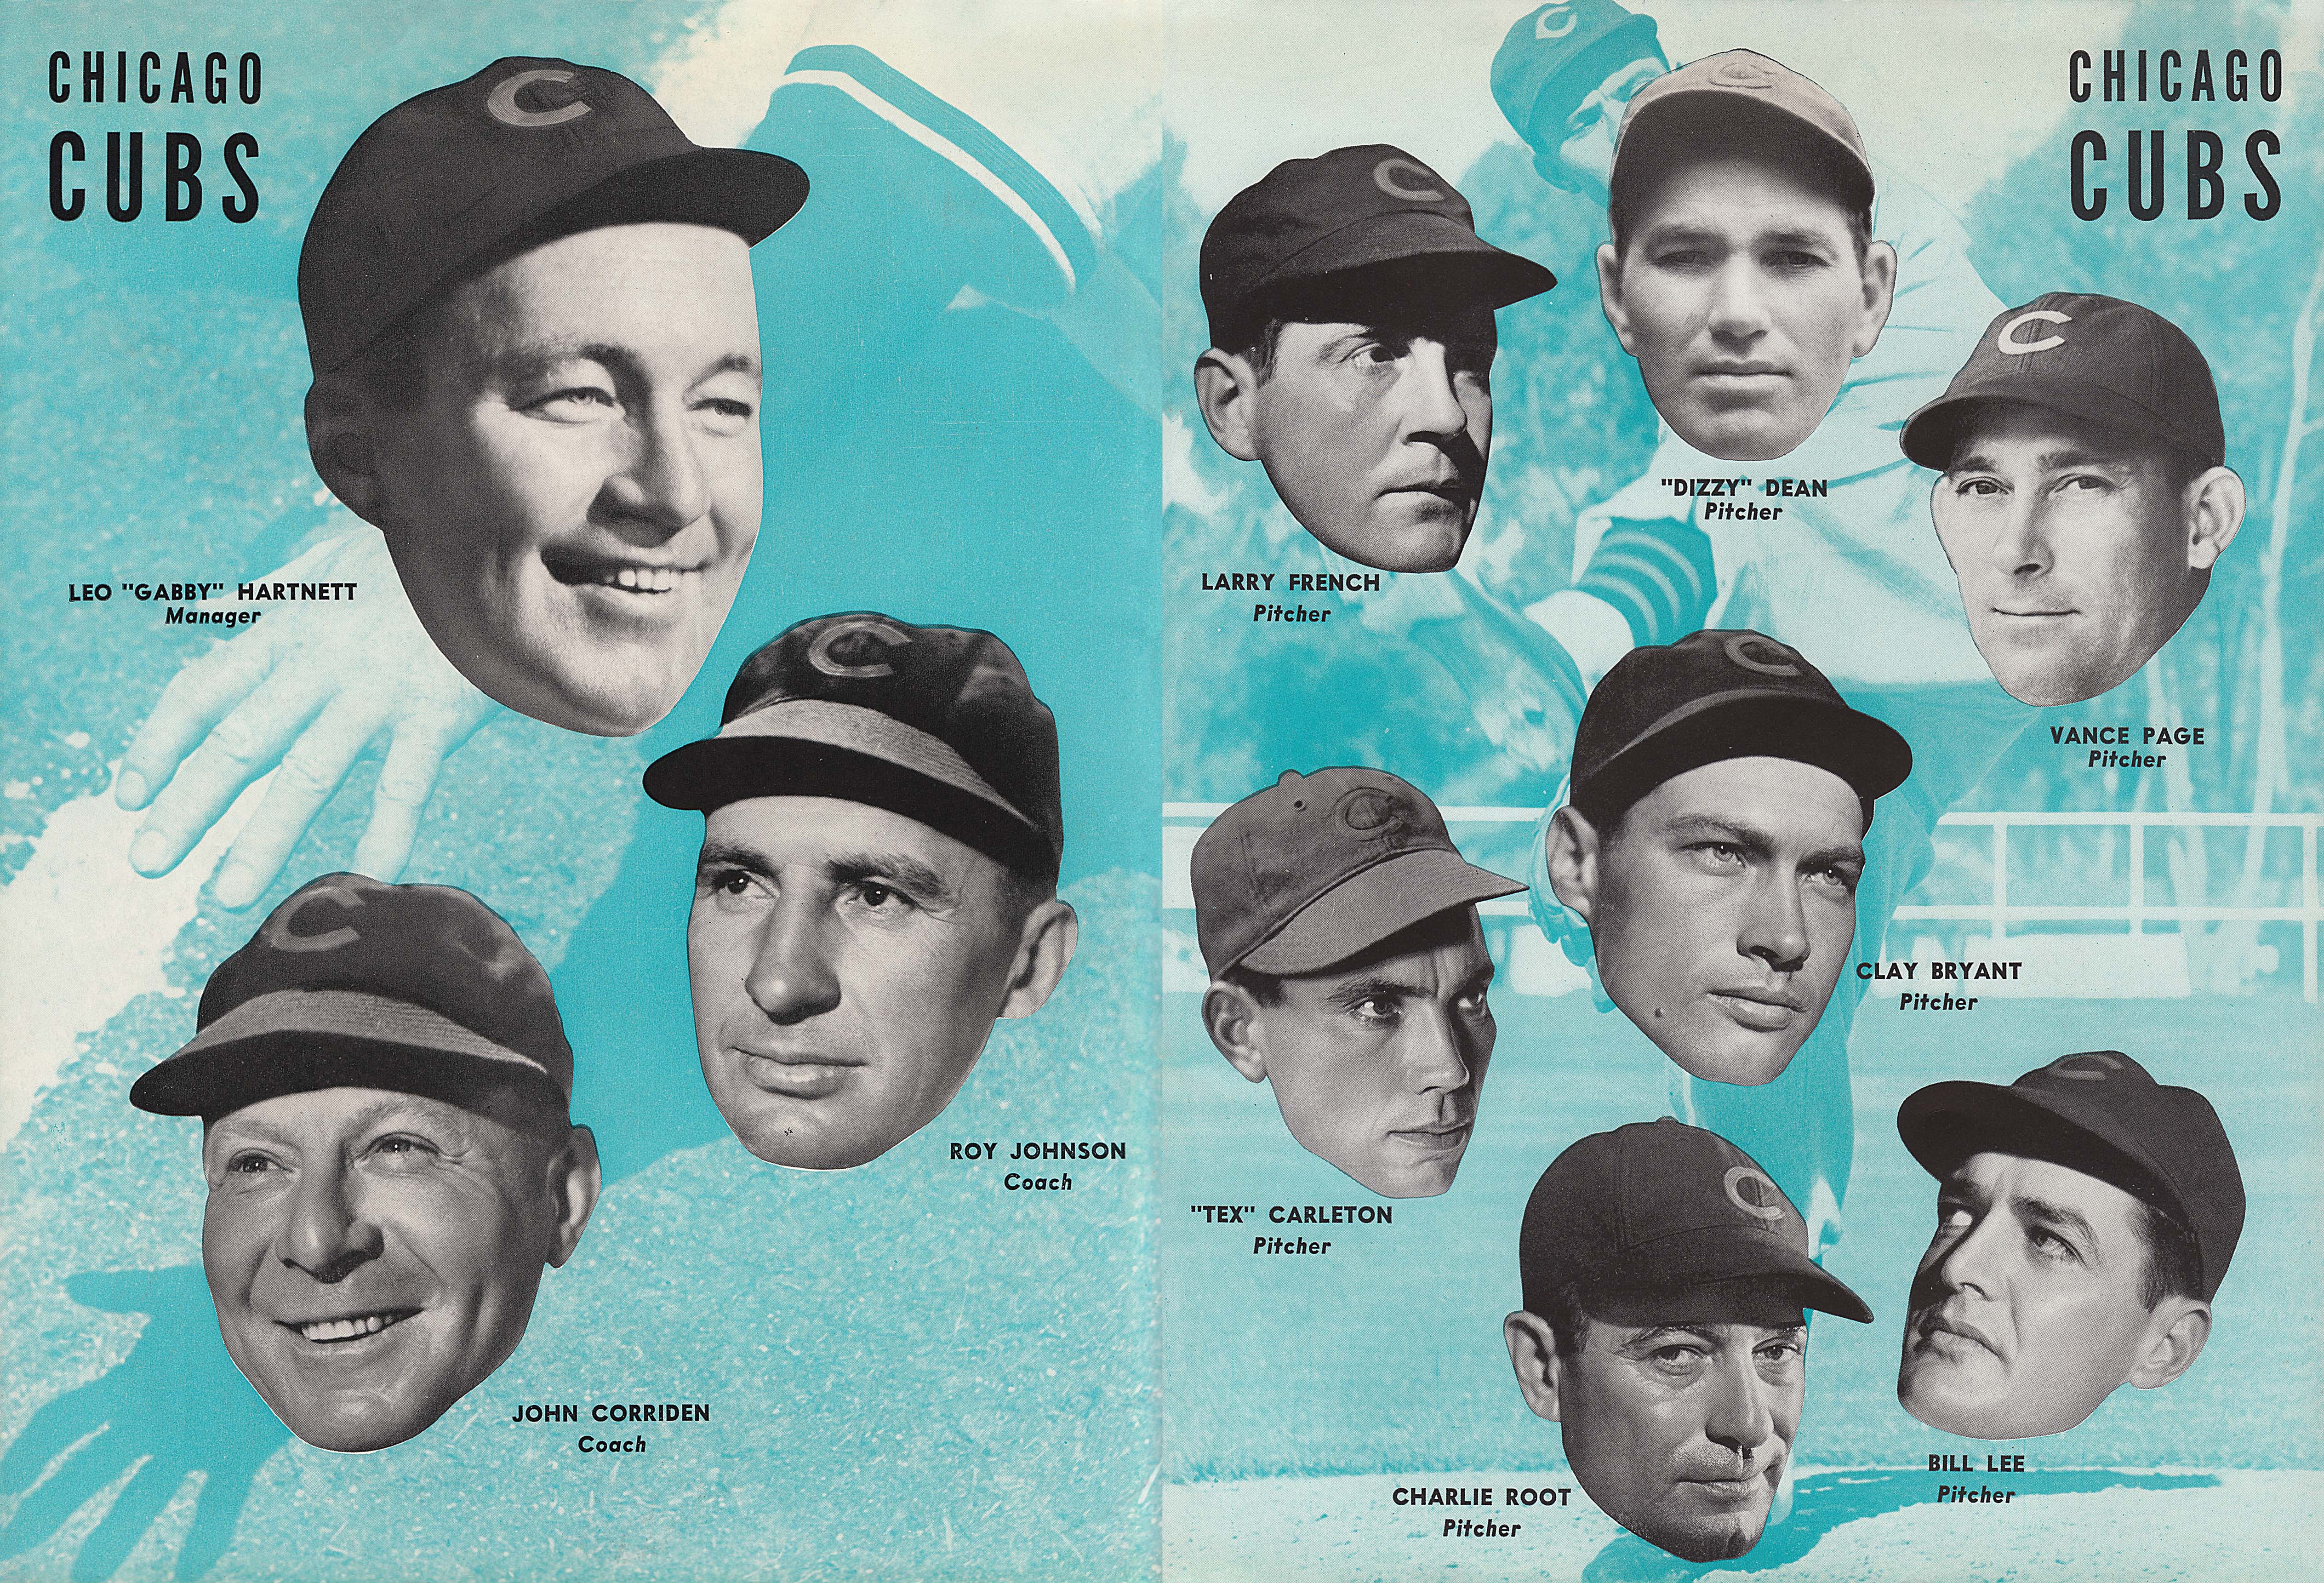 Chicago Cubs New York Yankees October 5, 1938 Otis Dorothy Shepherd